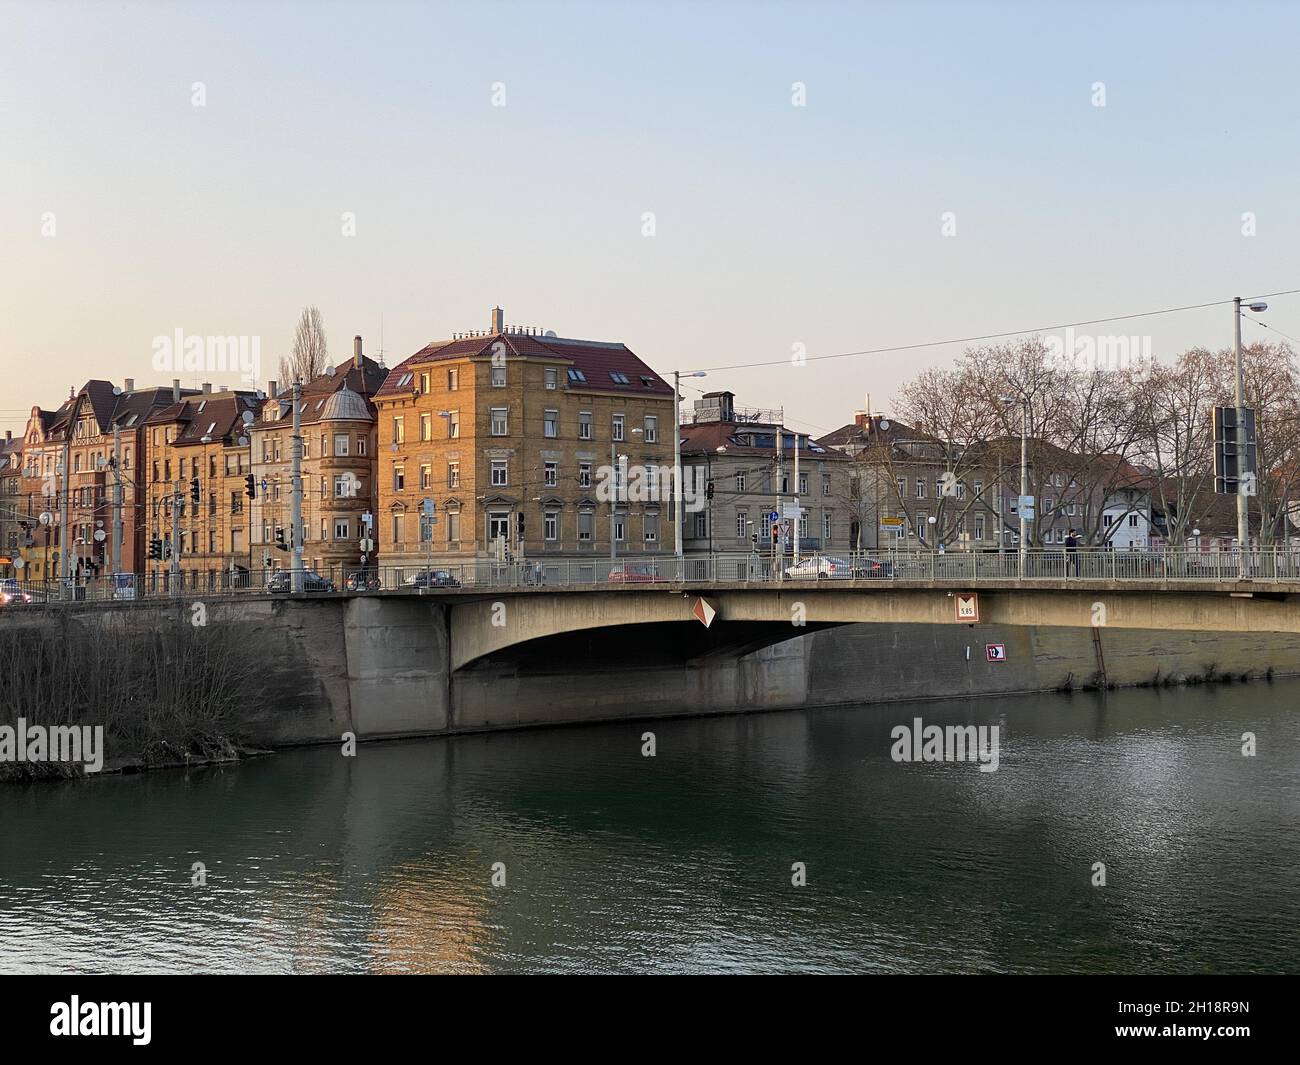 STOCCARDA, GERMANIA - Mar 28, 2020: Una splendida vista sul fiume Neckar e sulle incantevoli strade della città vecchia; il Neckarbrucke all'ora d'oro; Stoccarda Bad CA Foto Stock